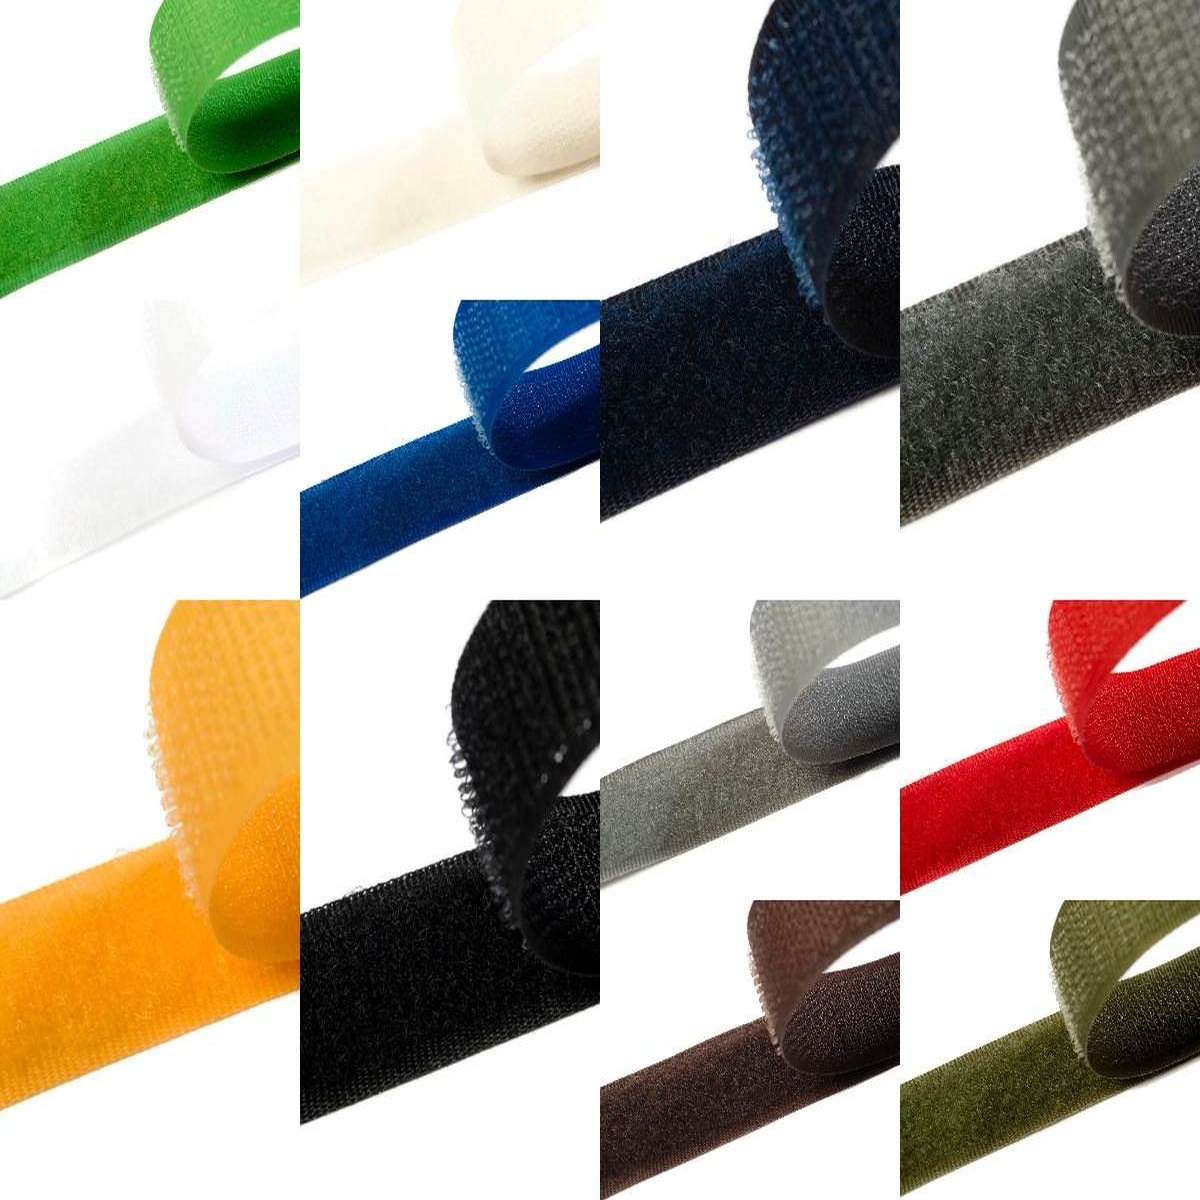 Klettband zum aufnähen 50mm breit in 12 Farben